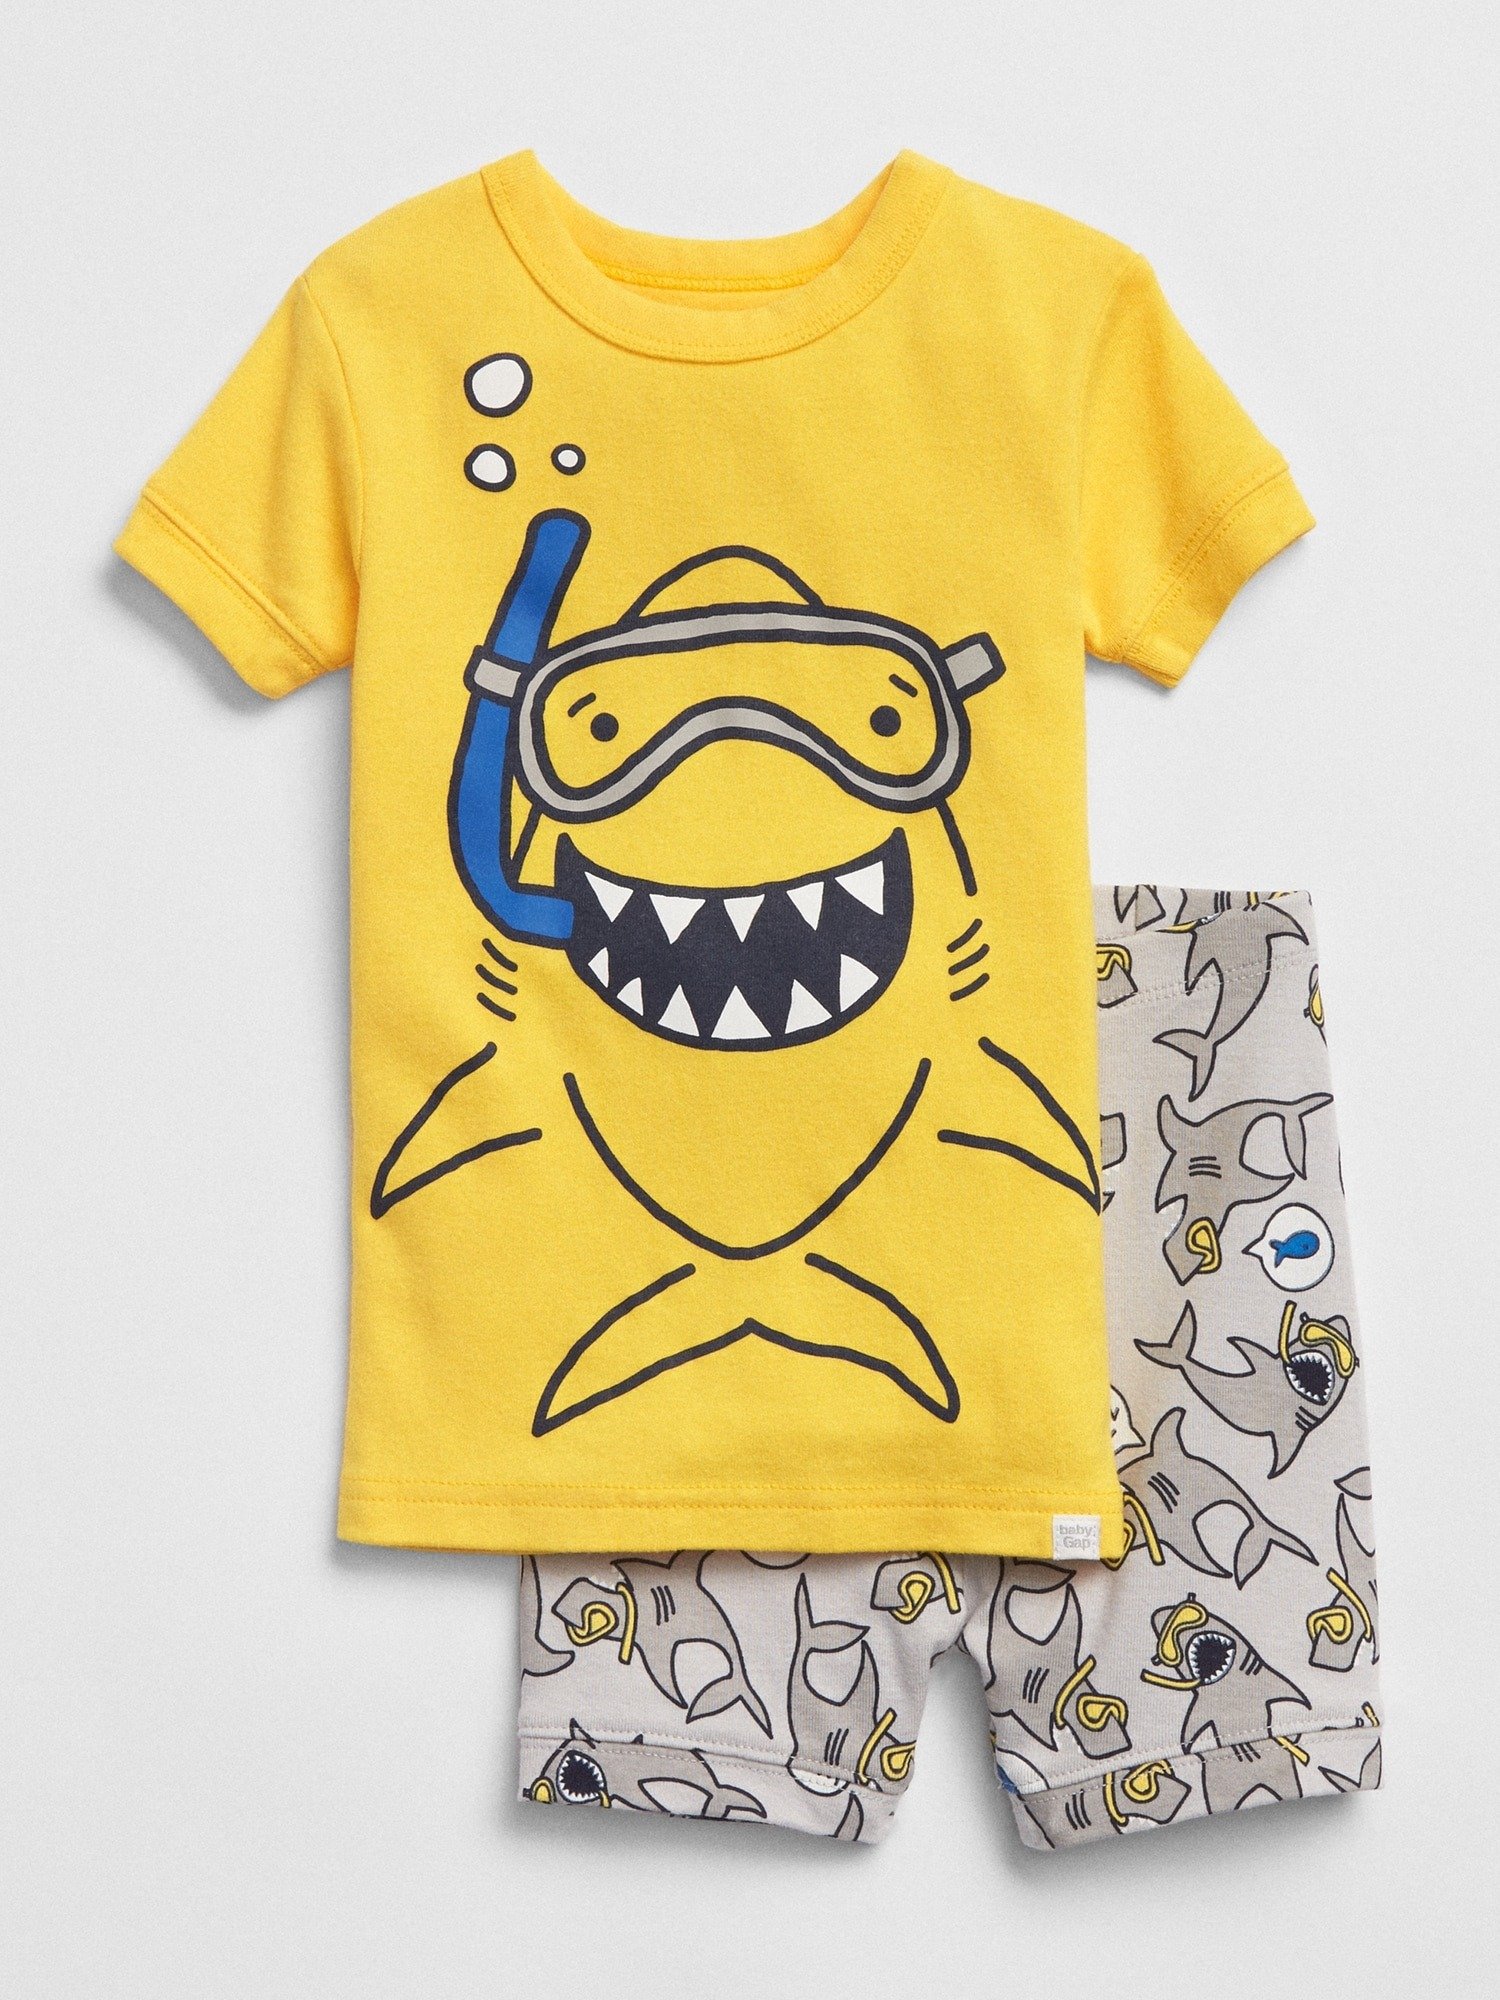 Köpek balığı desenli pijama takımı product image